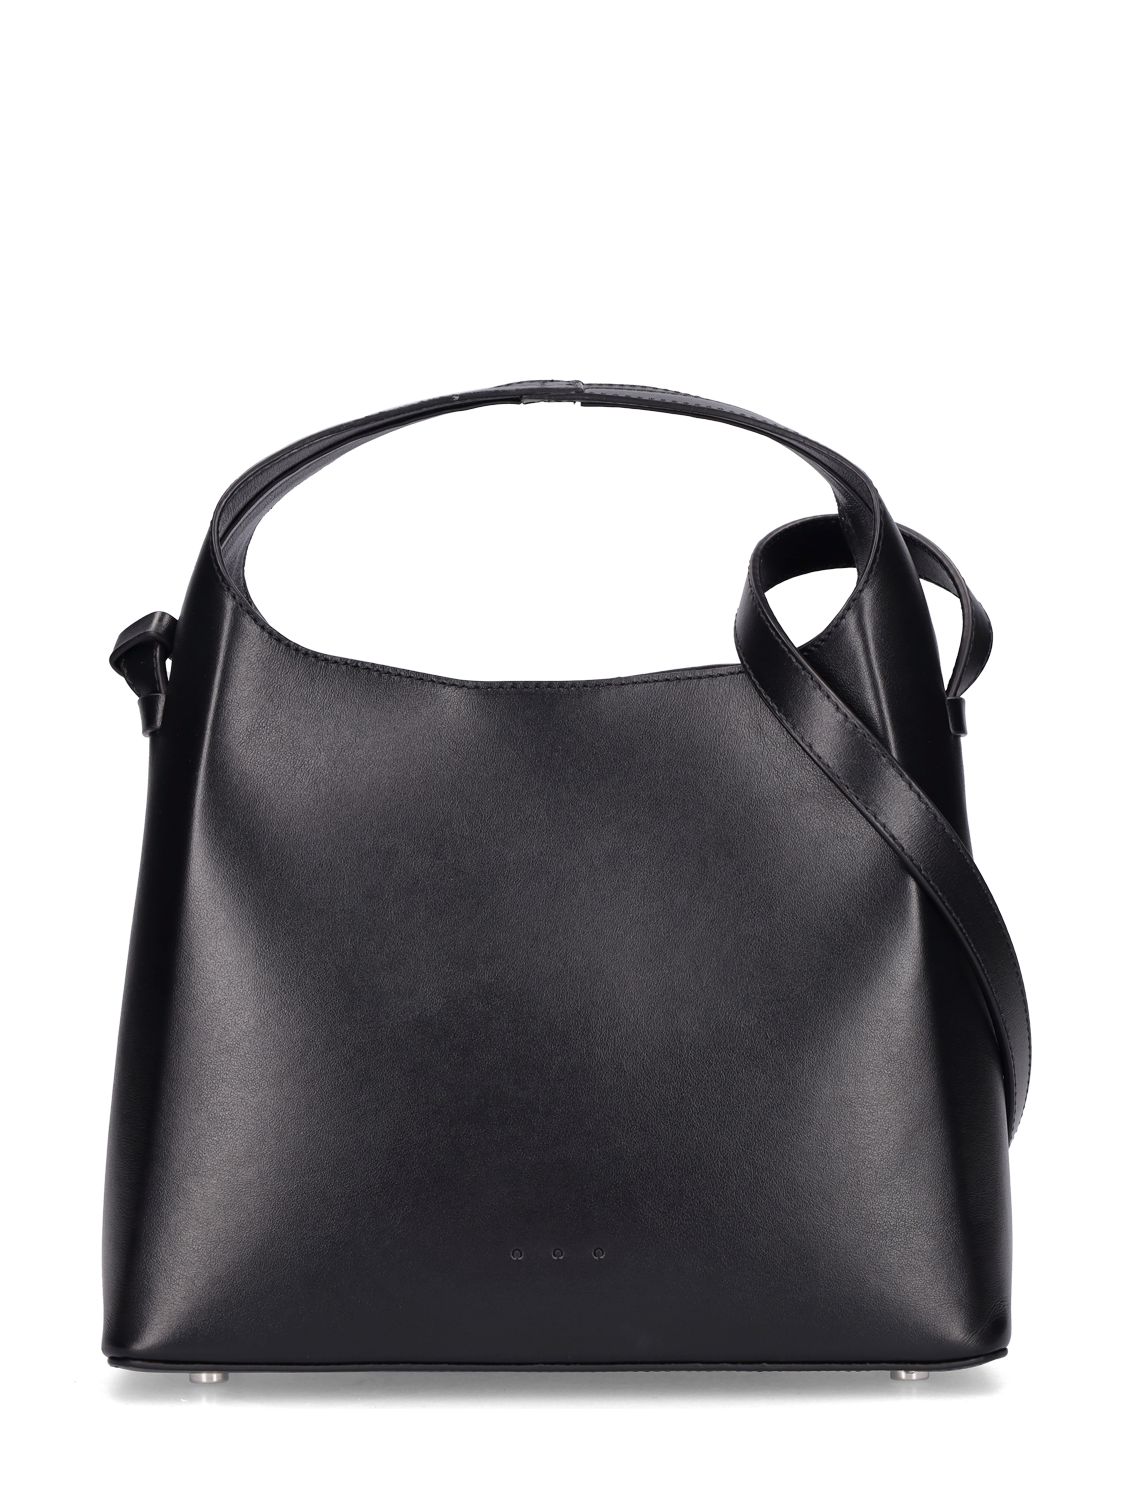 Mini Sac Smooth Leather Top Handle Bag